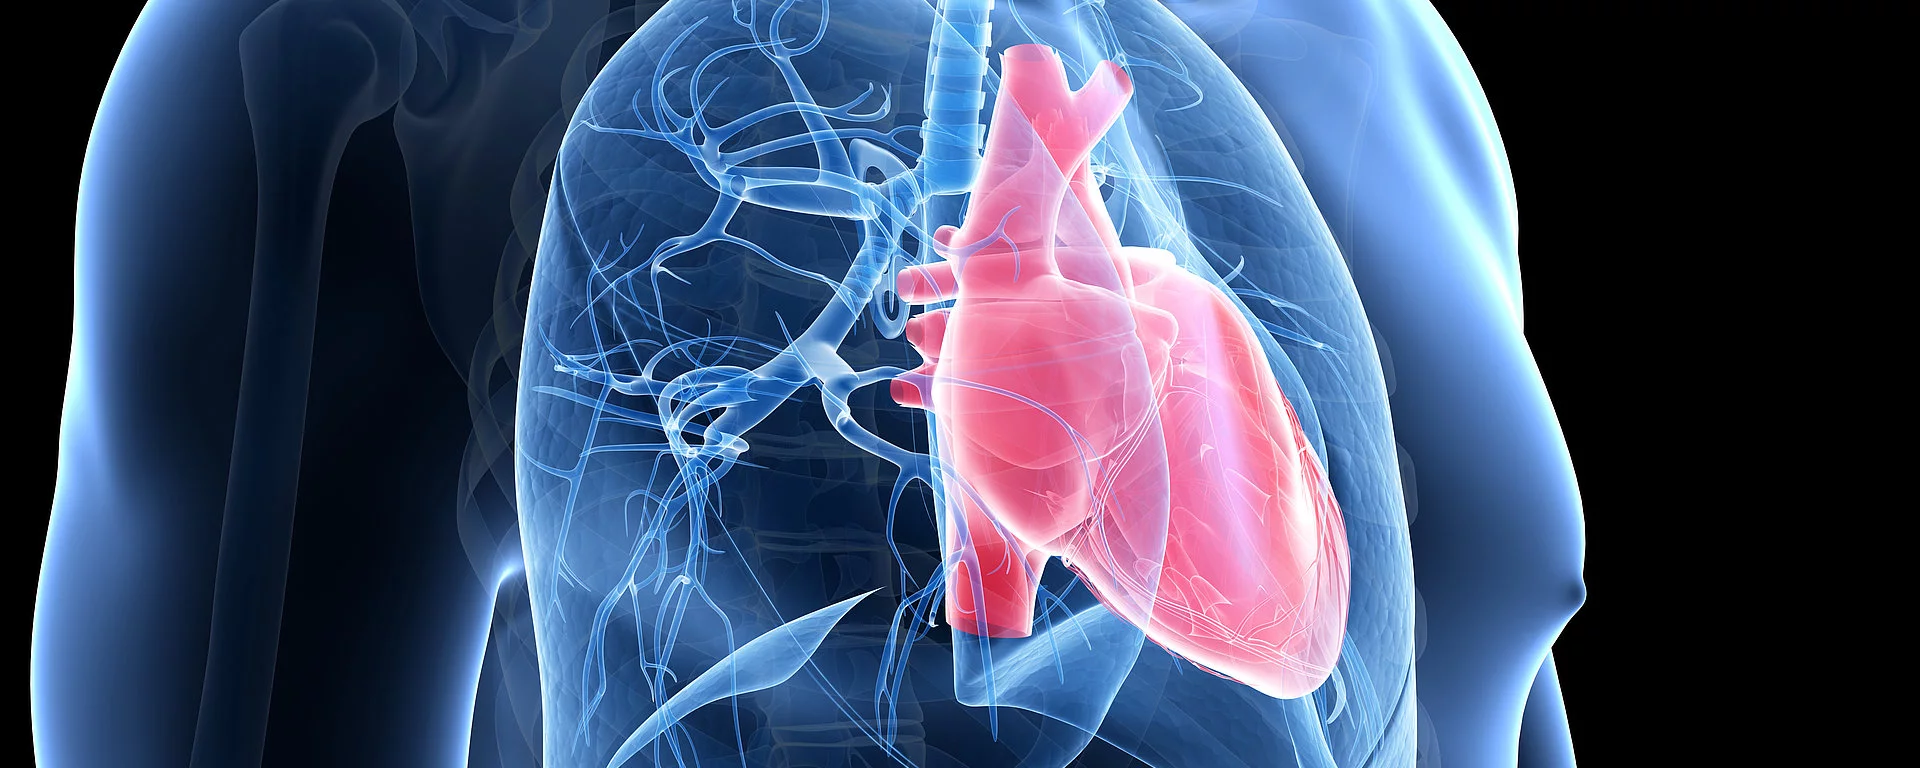 medizinische Illustration von Herz und Lunge